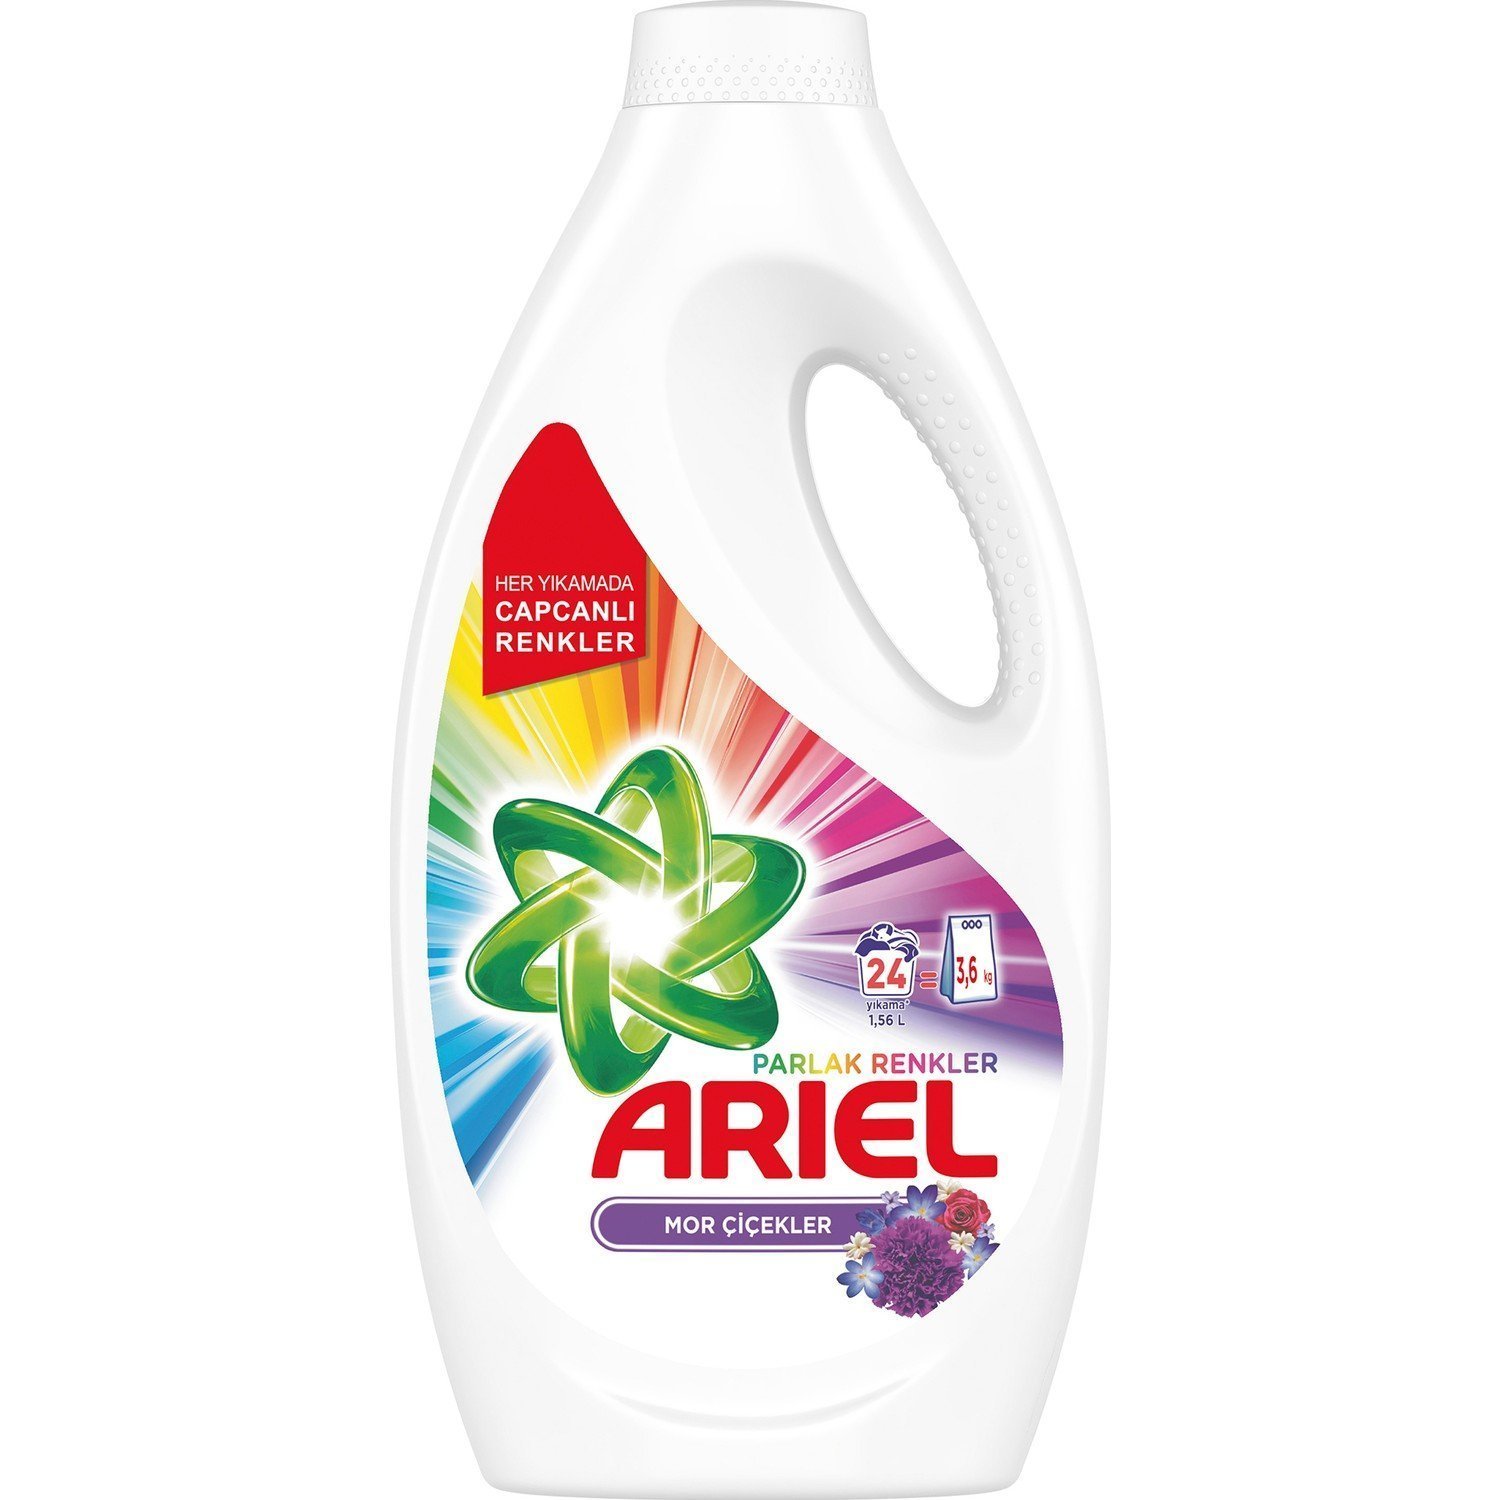 Ariel 24 Yıkama Sıvı Çamaşır Deterjanı Mor Çiçekler